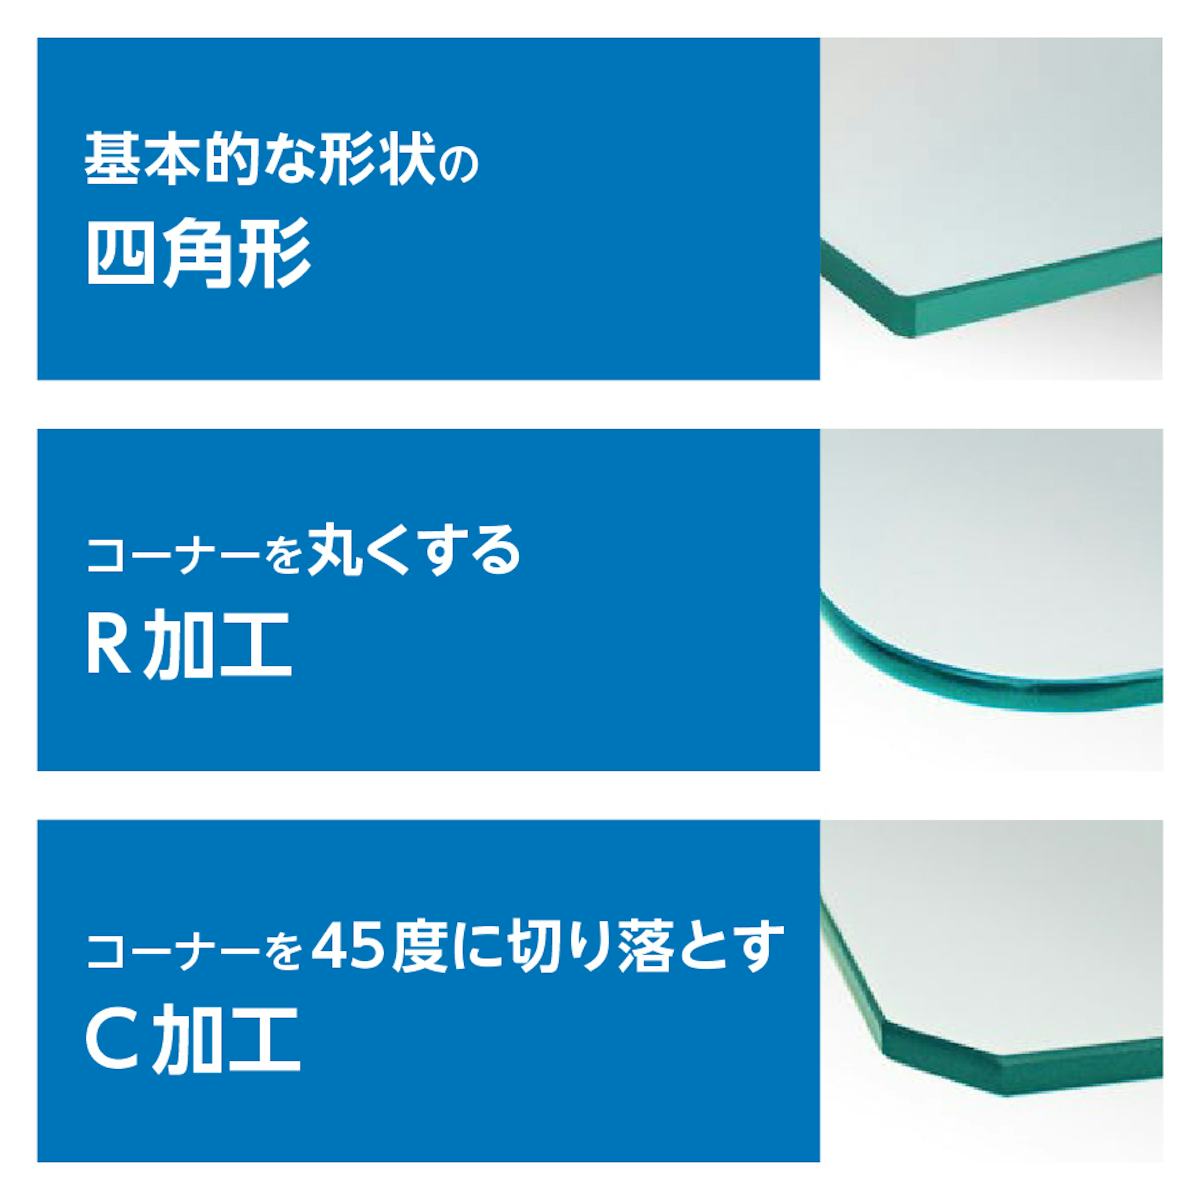 「透明ガラス：棚受けダボセット(木地用)」で使うガラス棚板は、角をR加工やC加工できる